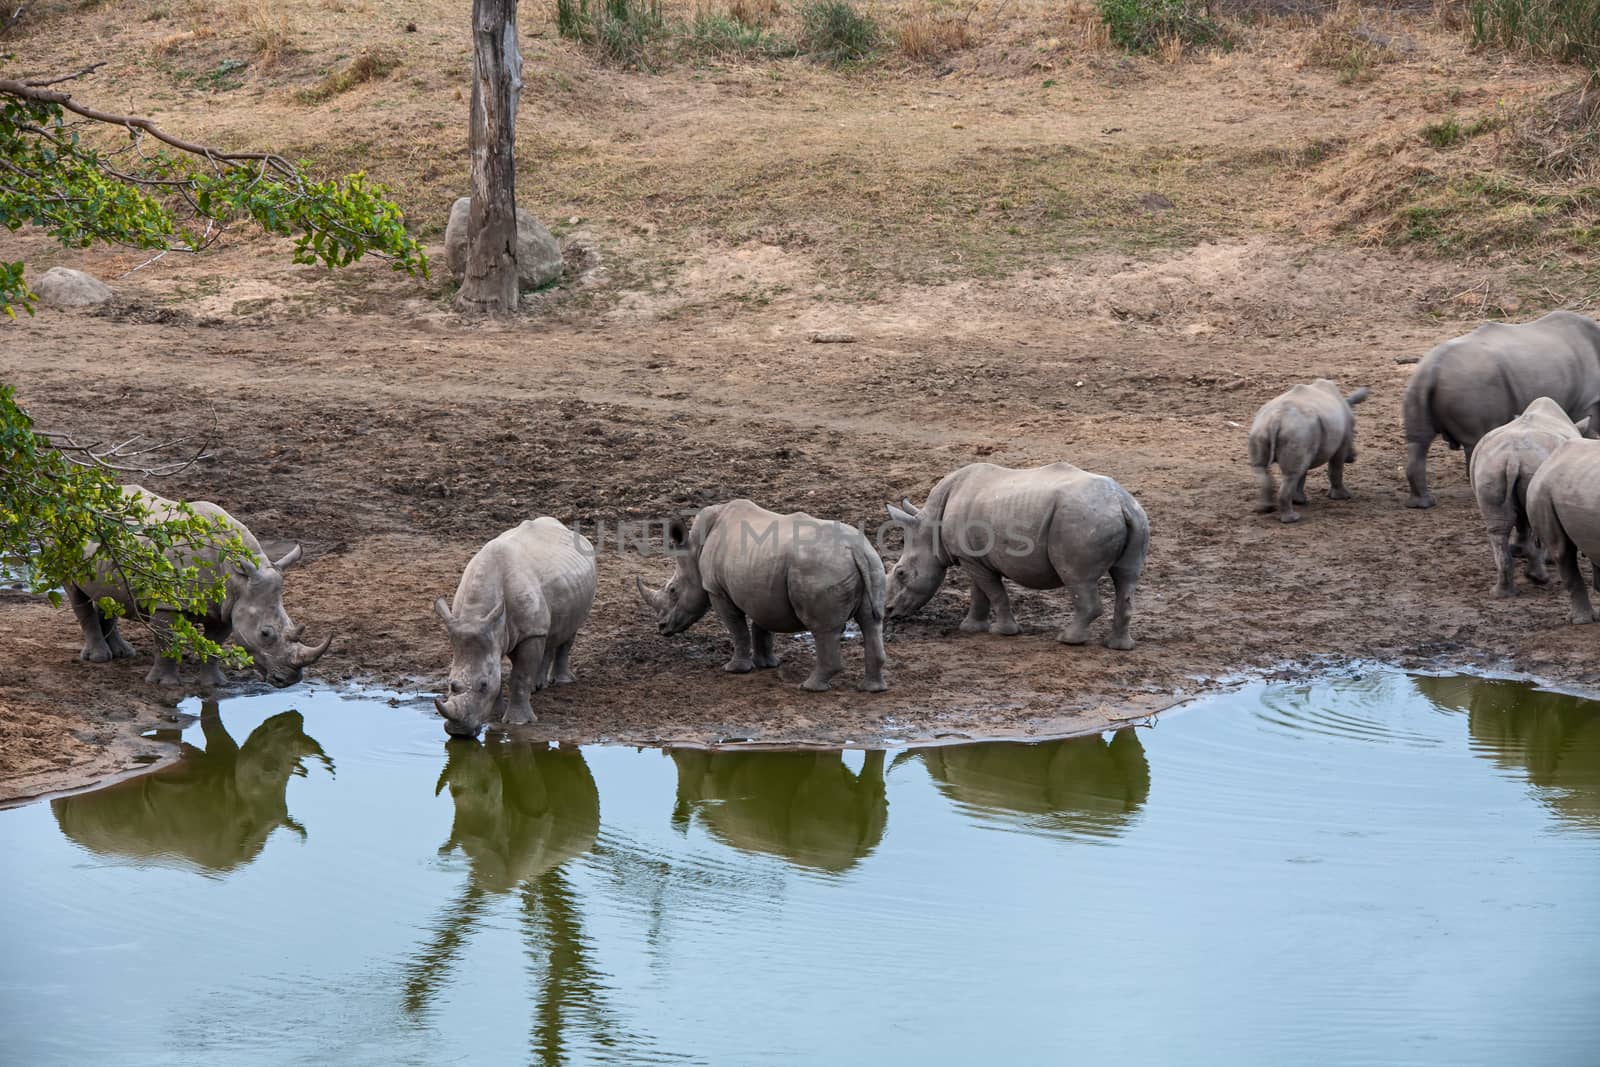 Rhino Gathering by kobus_peche